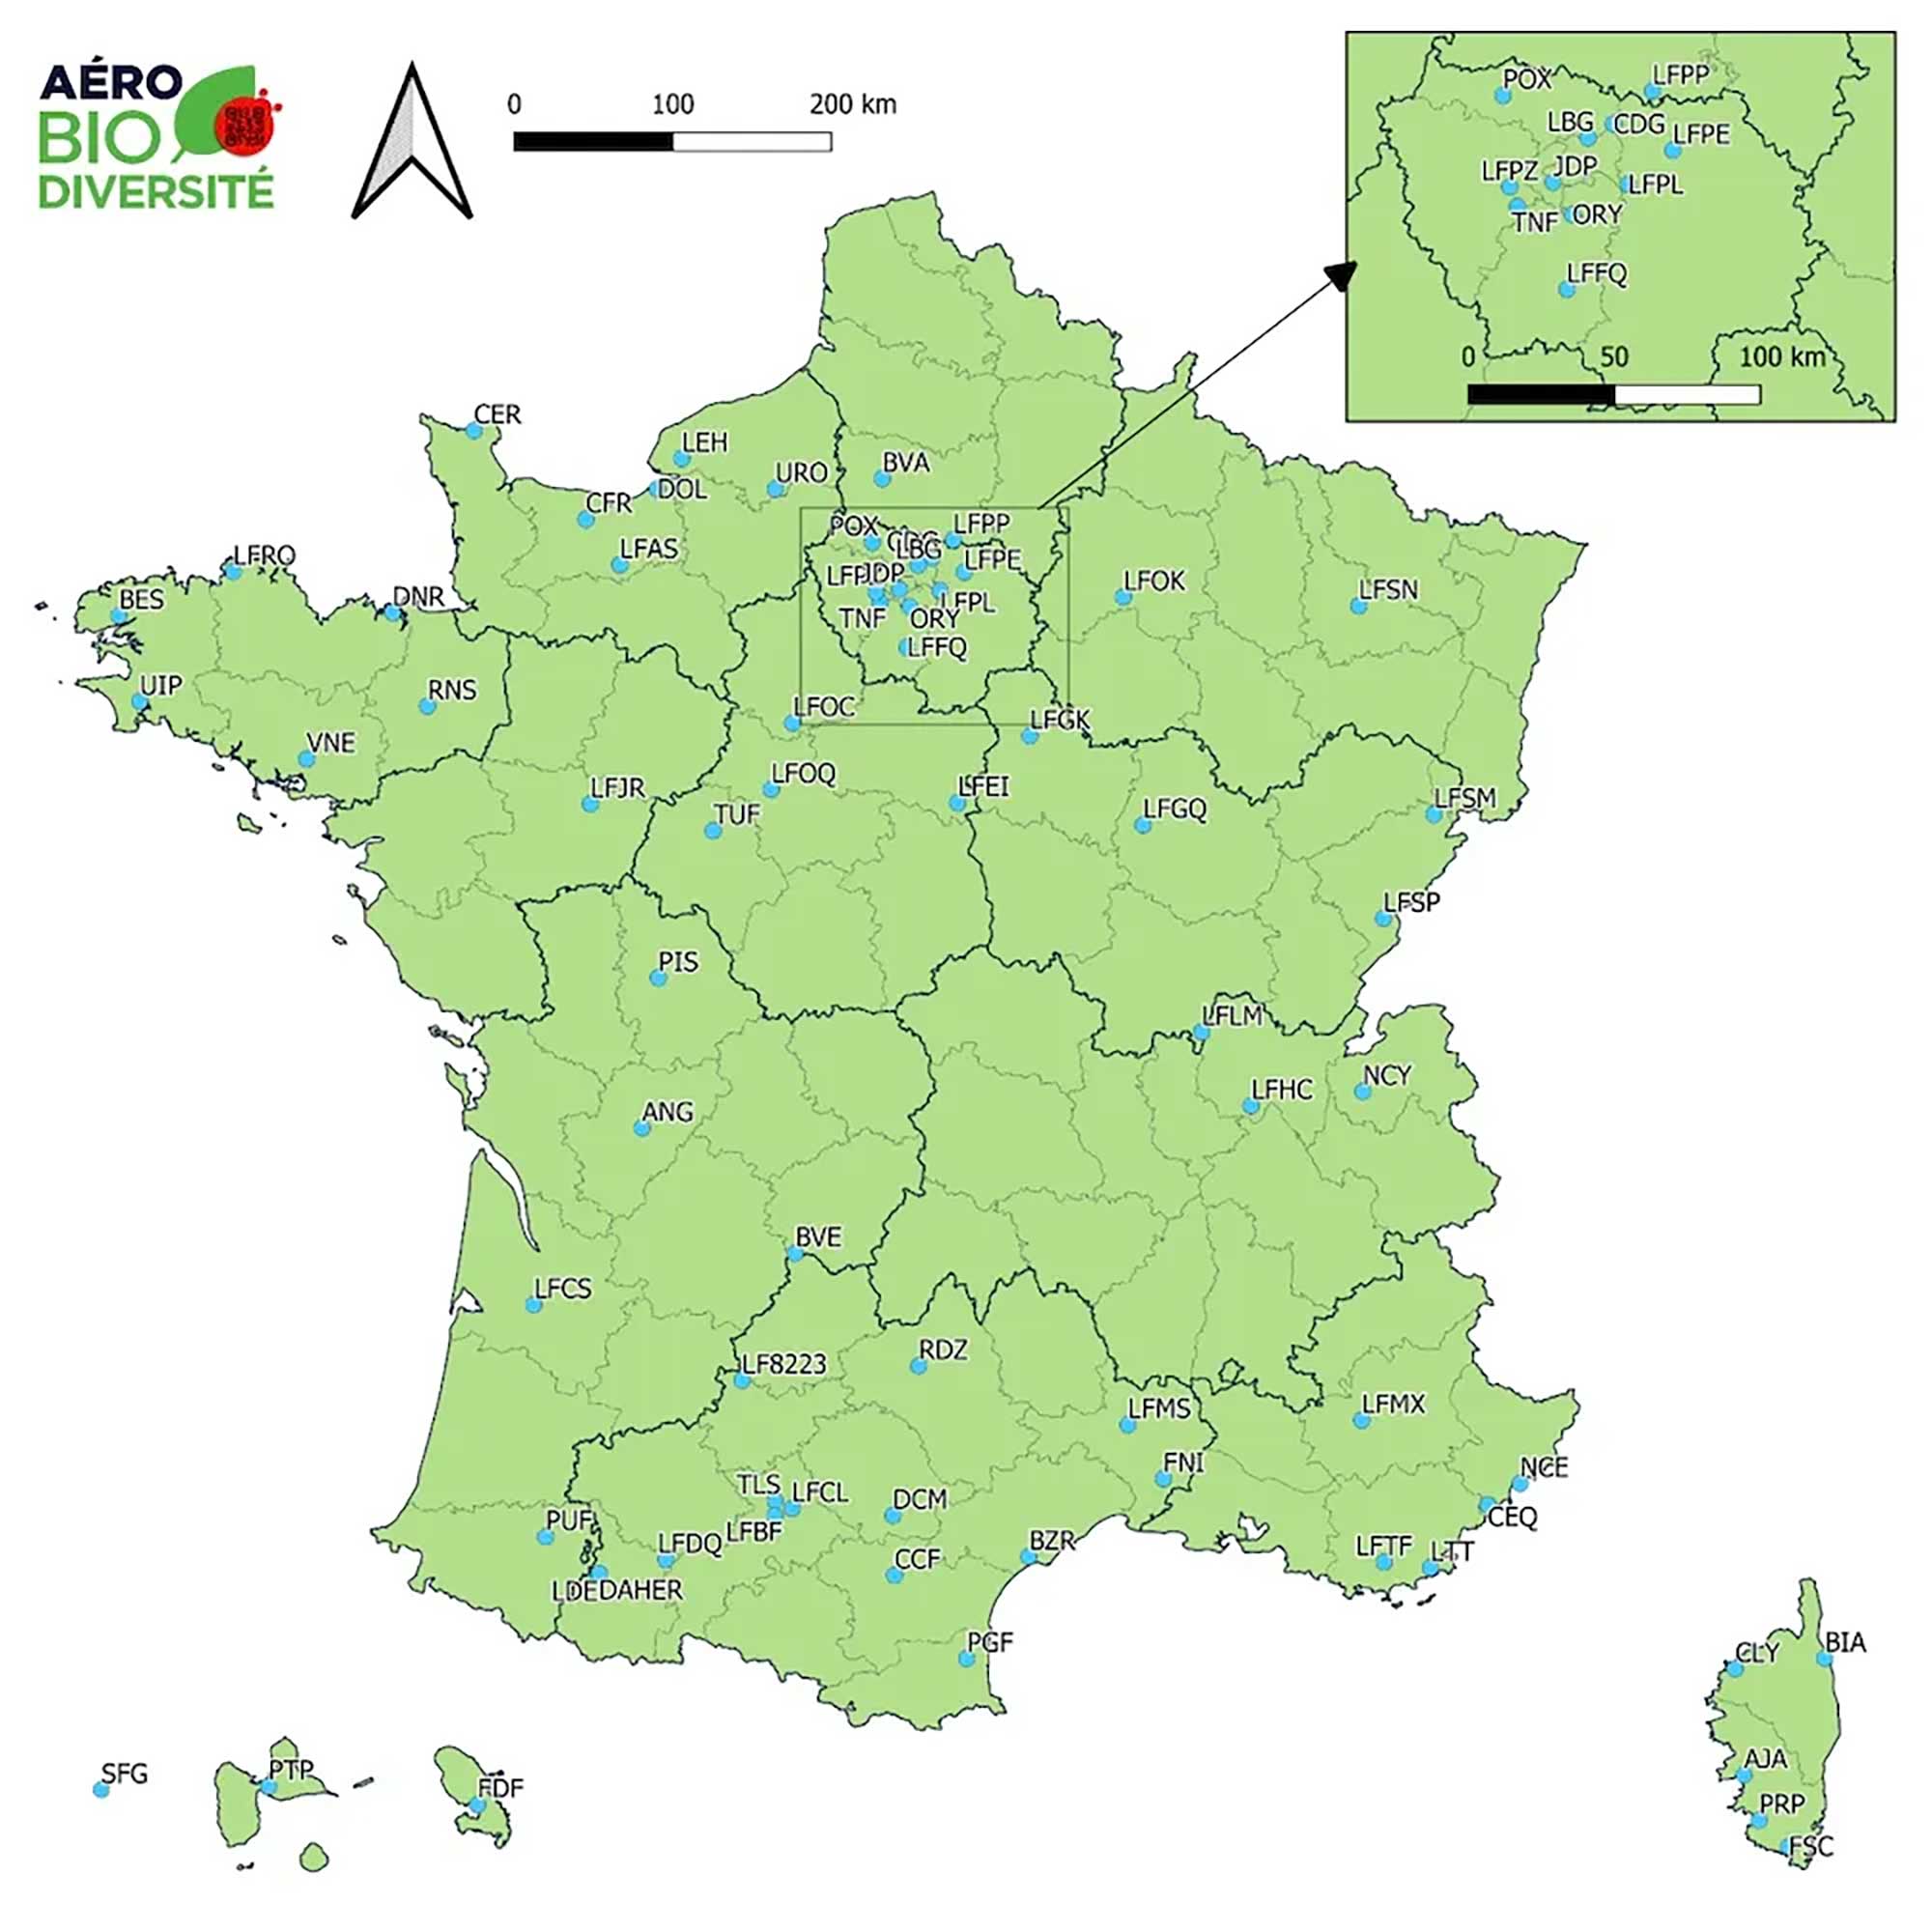 Map of Aéro Biodiversité sites across France. Image and photos: Aéro Biodiversité